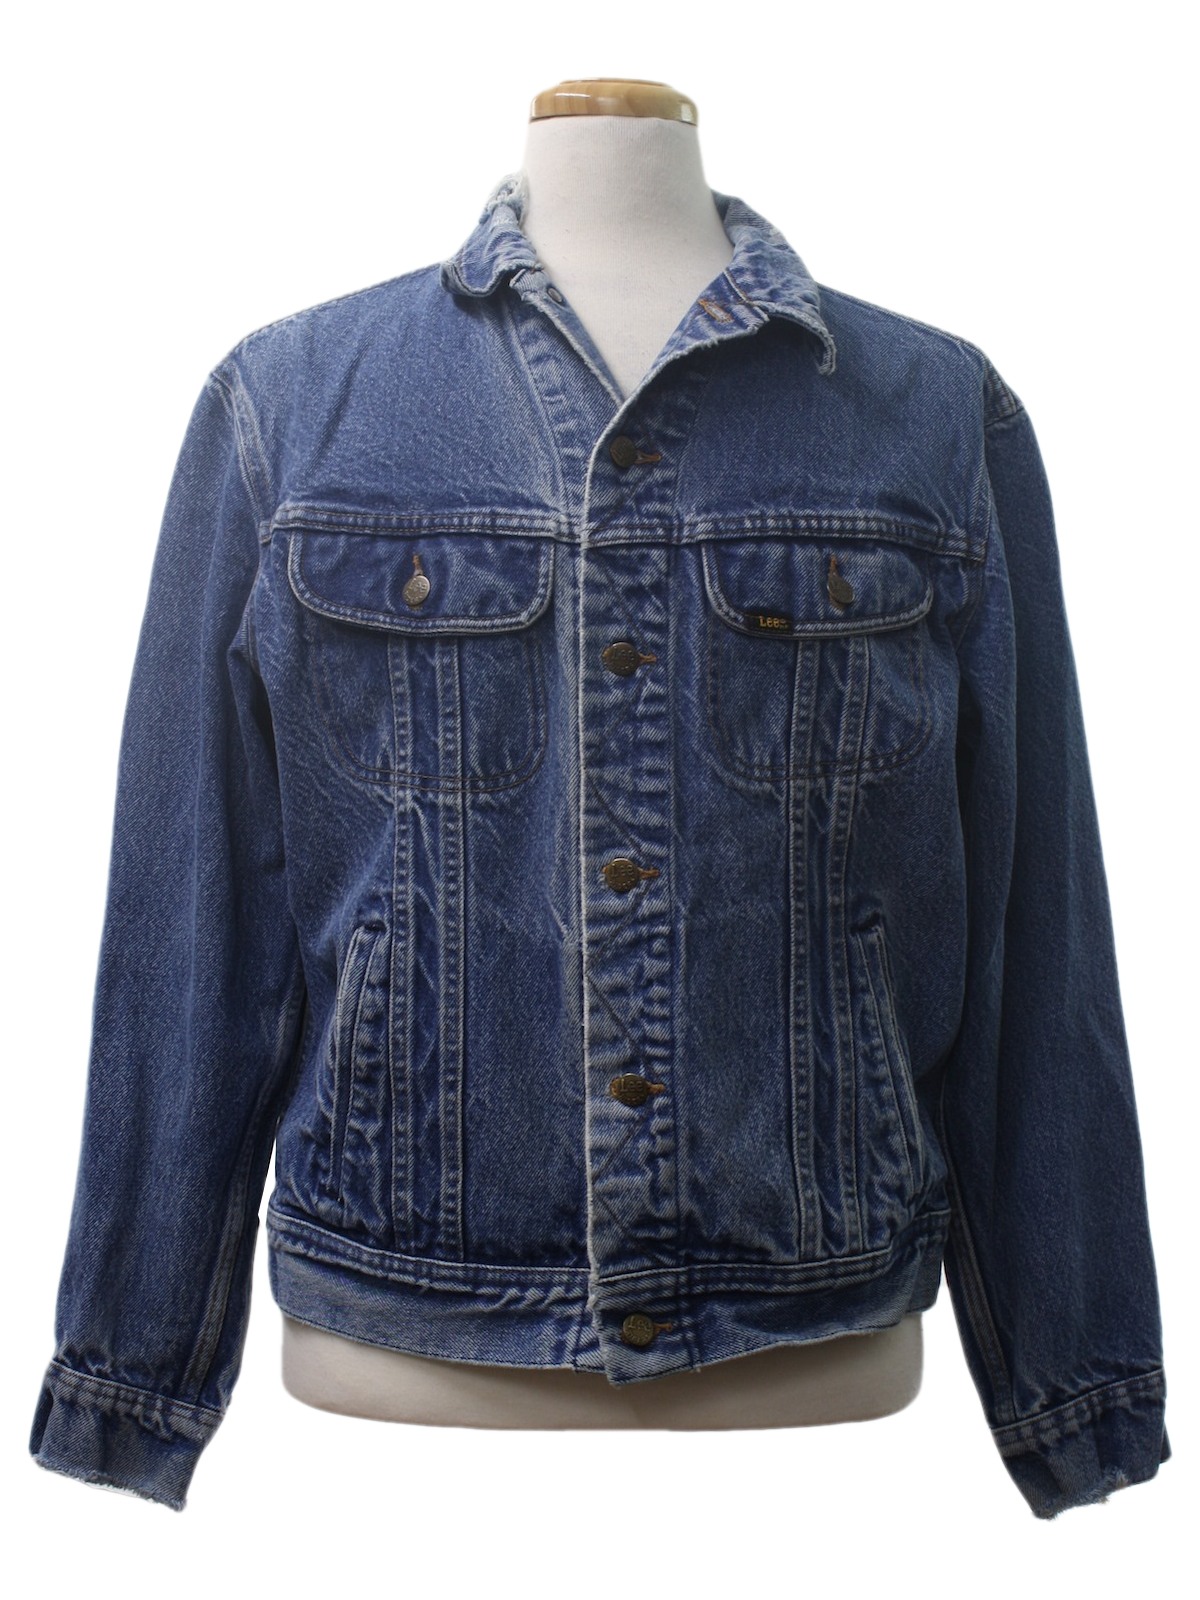 Vintage 1970's Jacket: Late 70s -Lee Patd 153438- Mens blue background ...